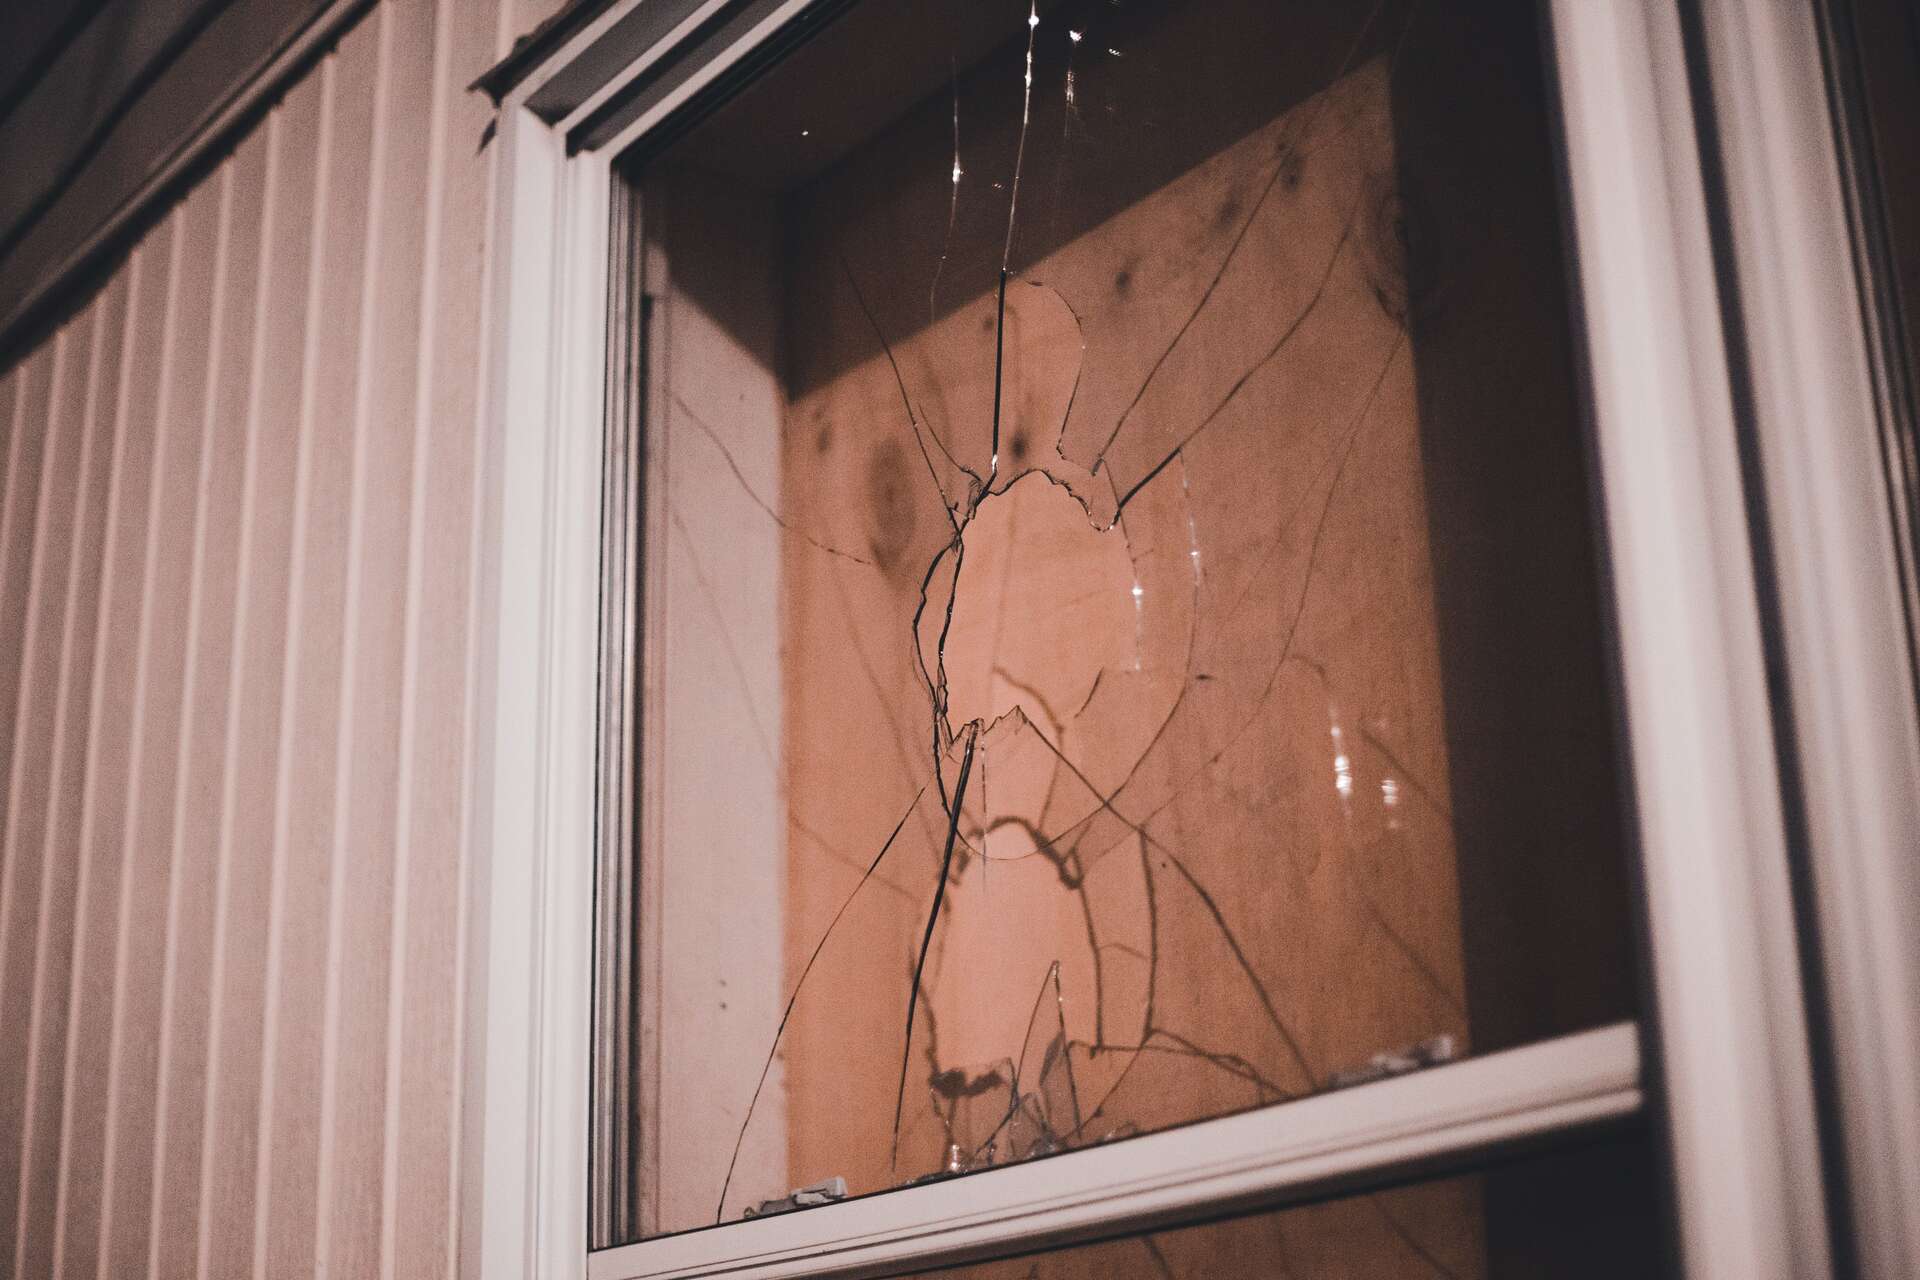 broken window pane